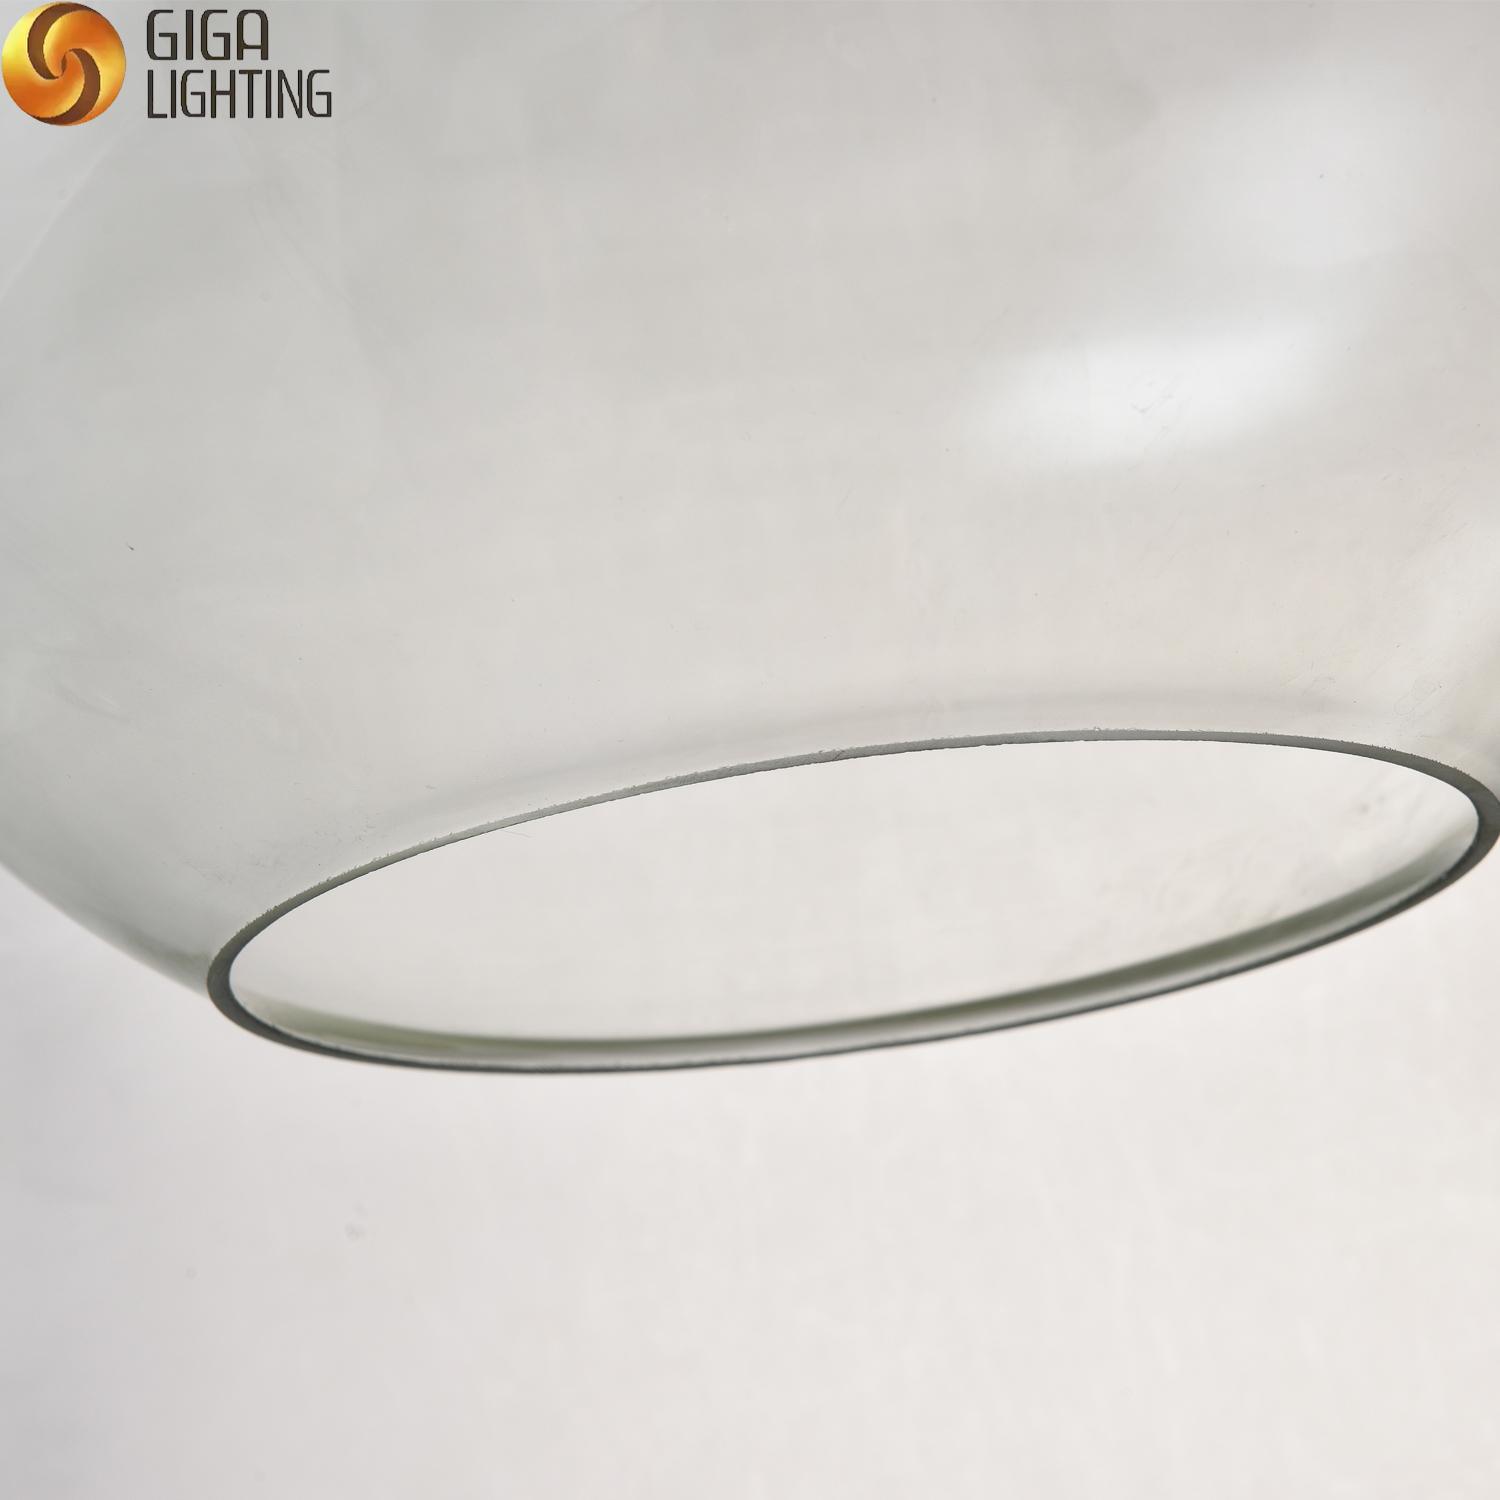 CE modern glass pendant lighting decorative chandelier Restaurant interior kitchen